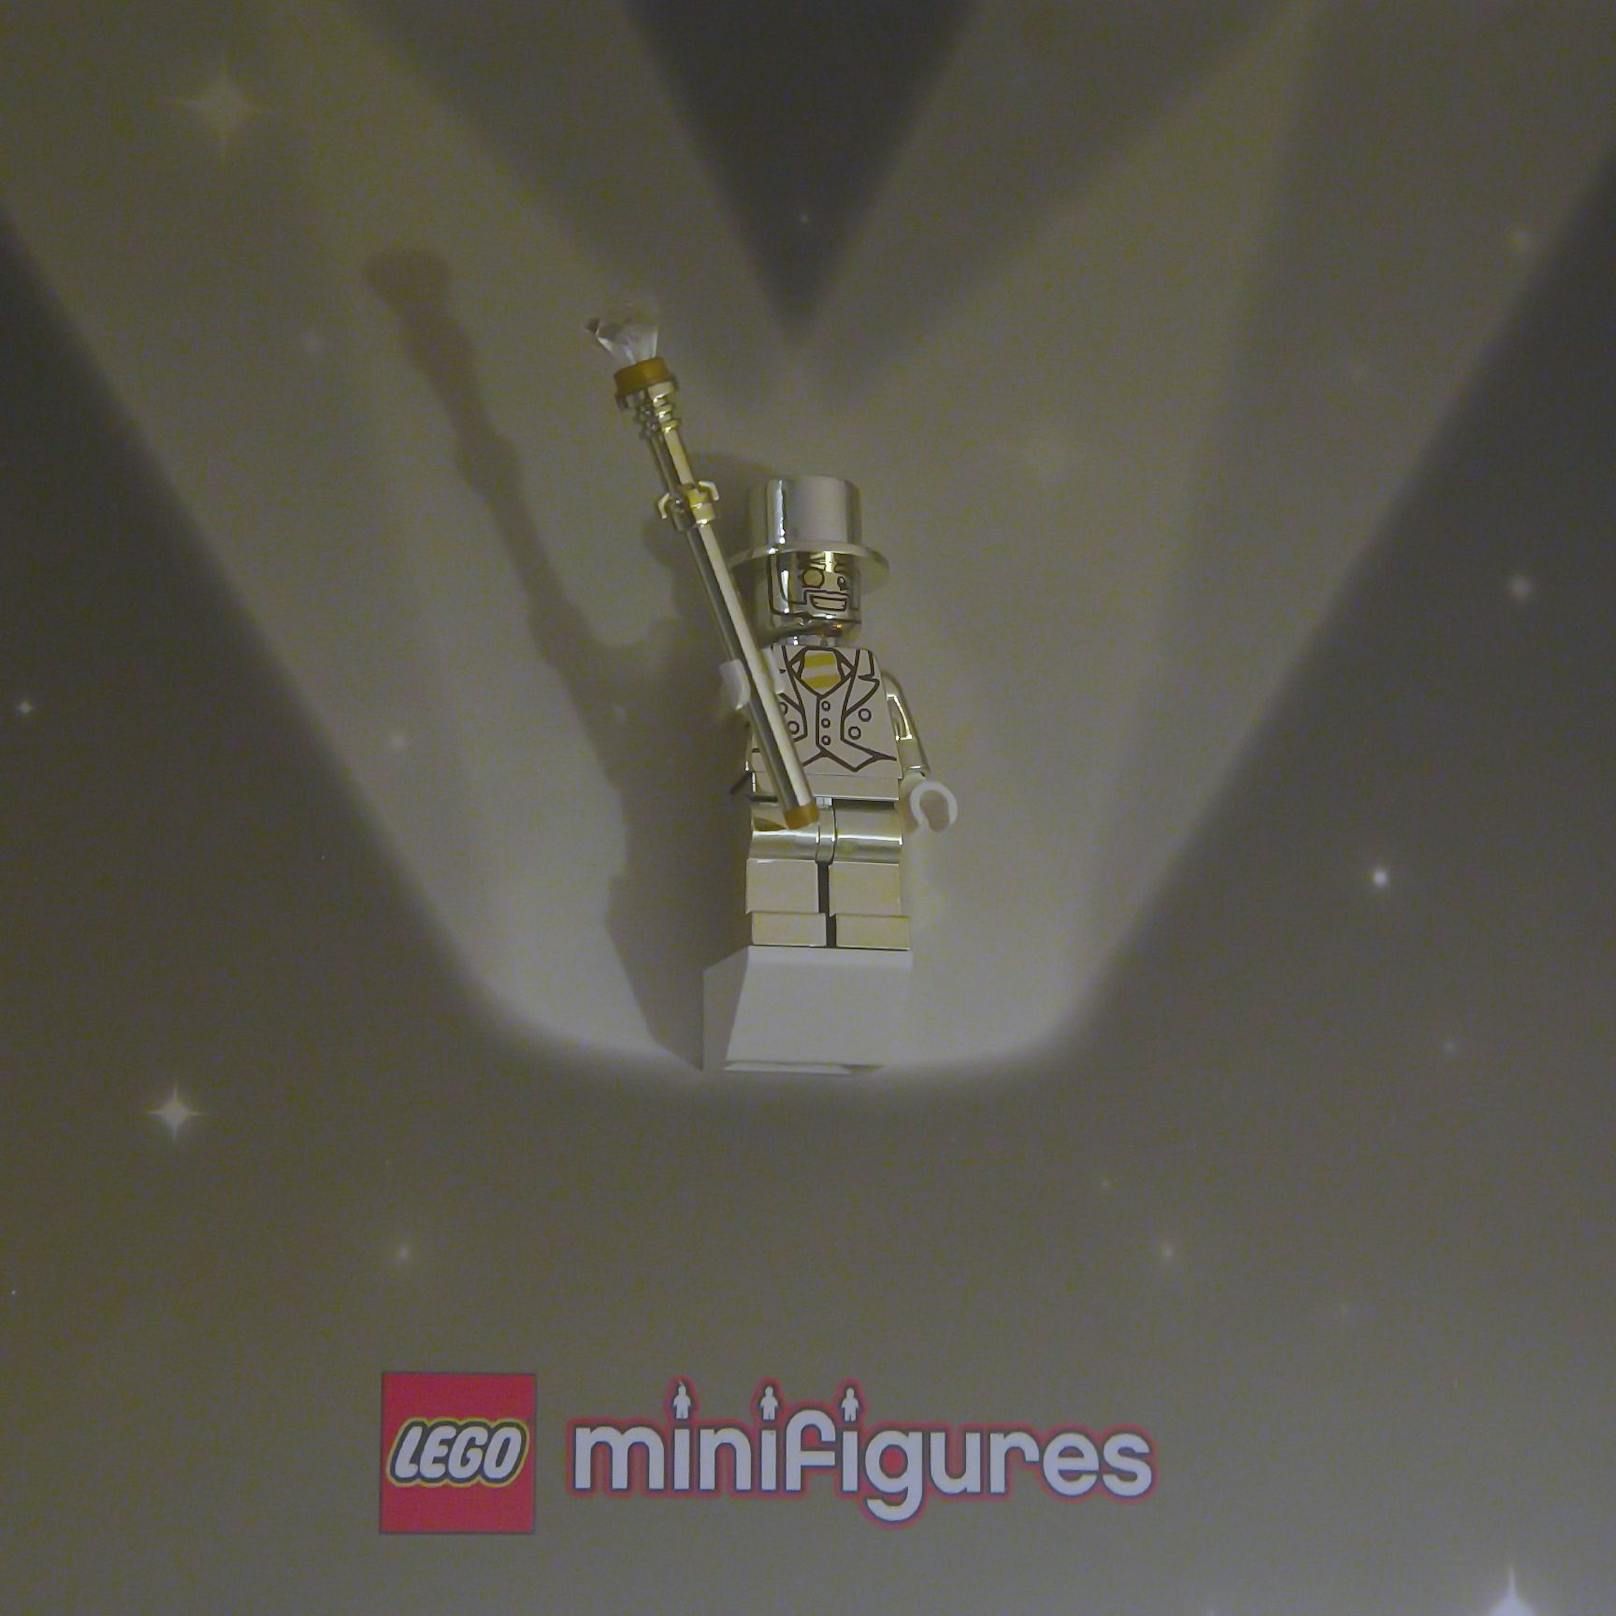 Den goldenen Lego-Mann gibt es weltweit nur 5.000 Mal.